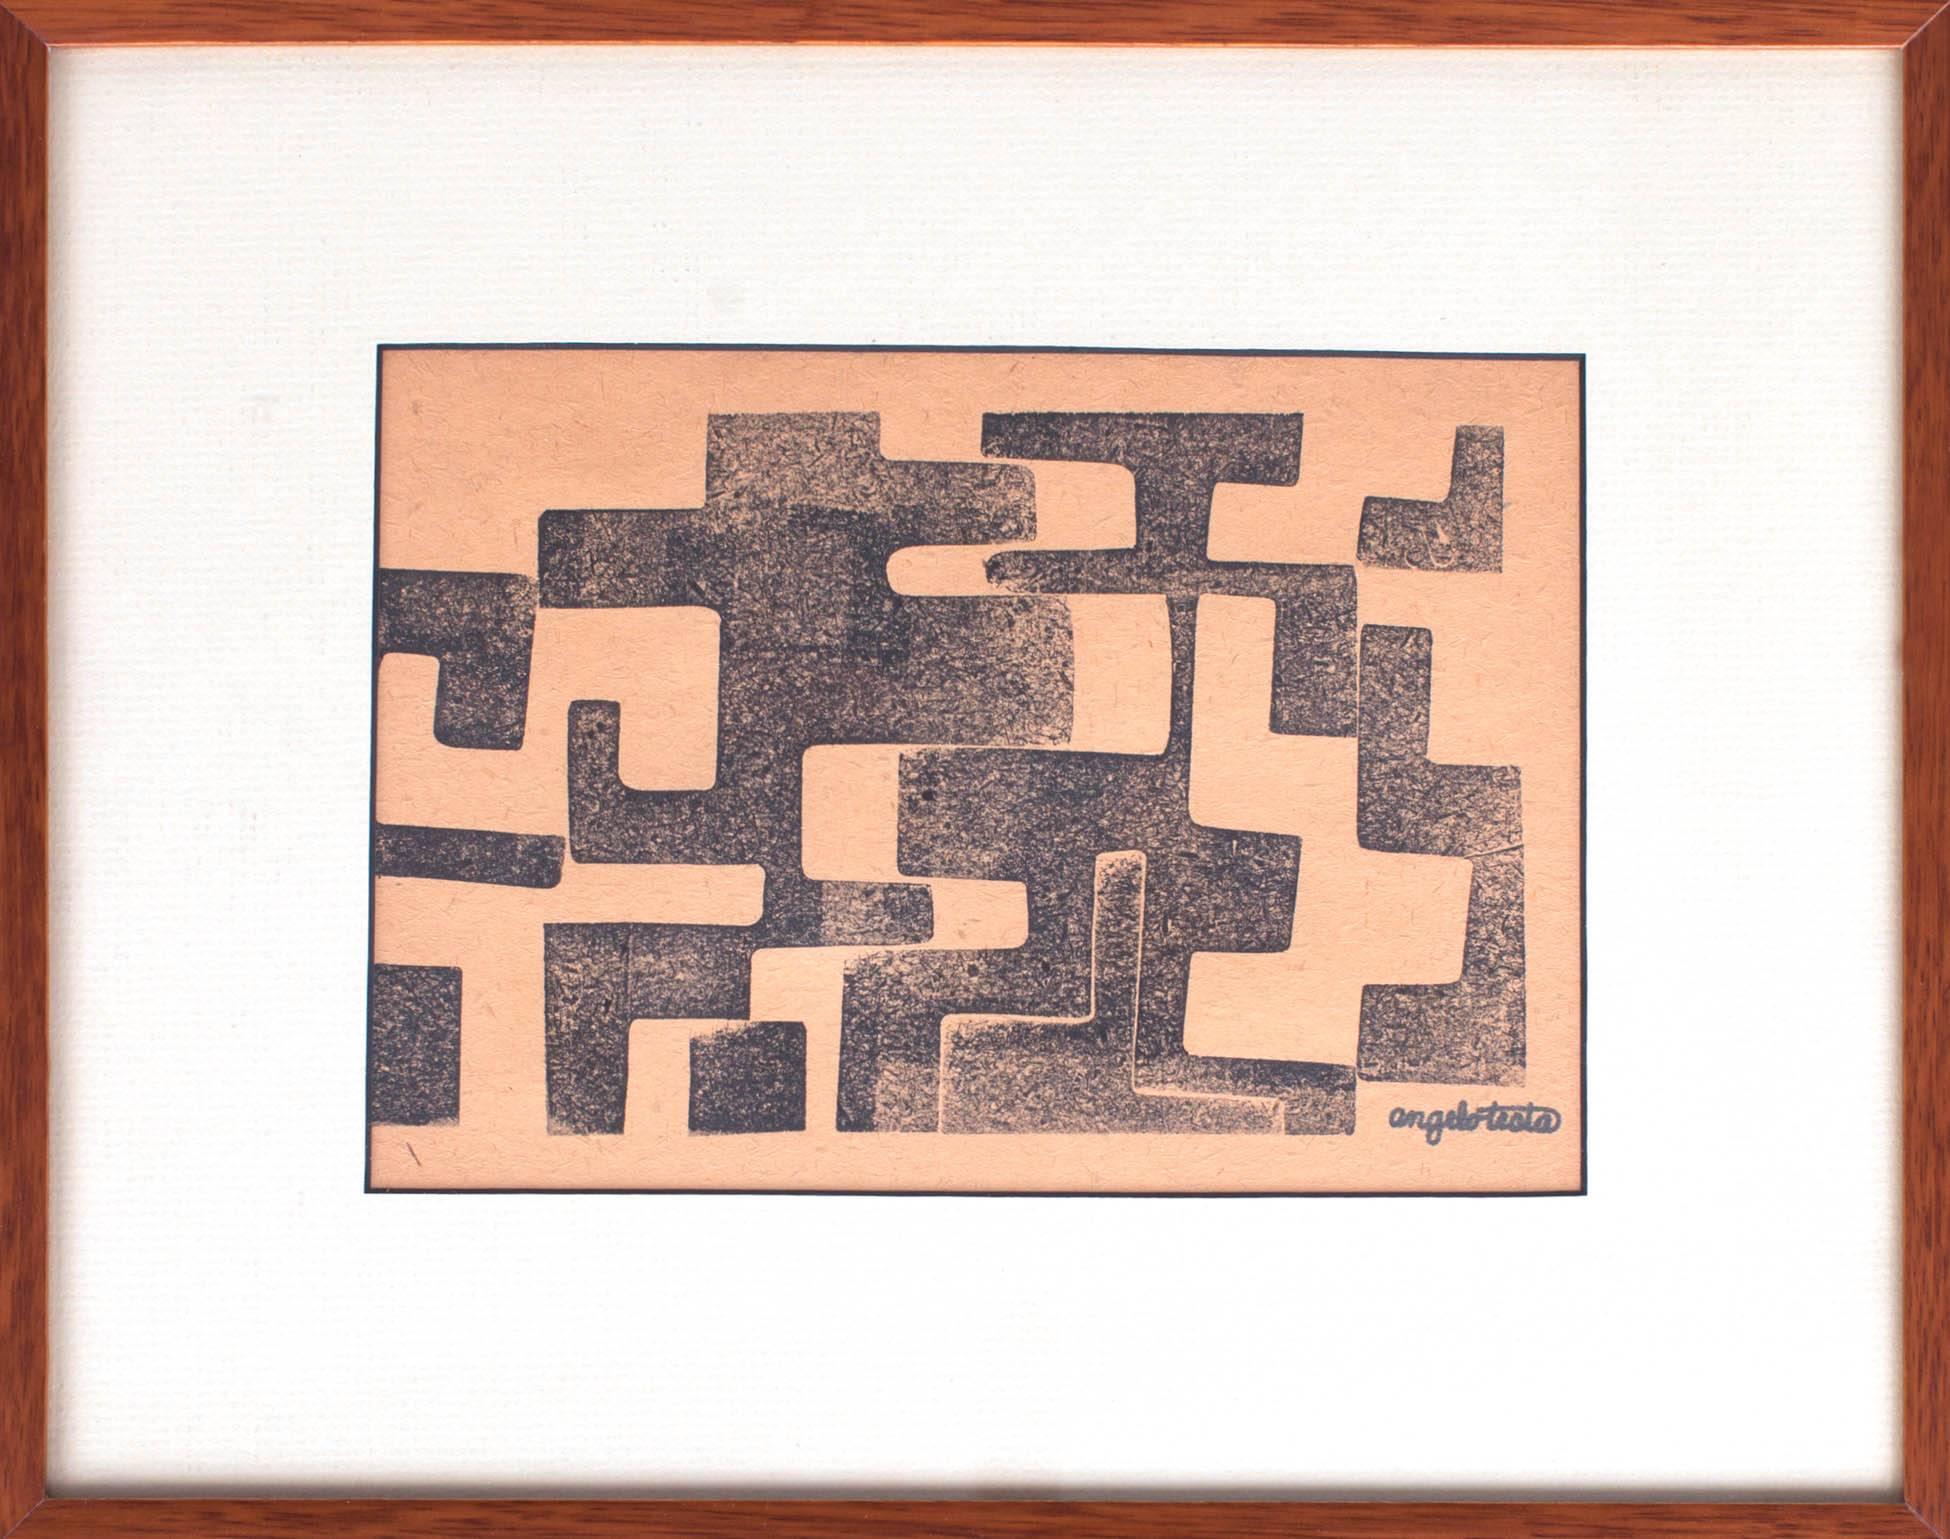 Angelo Testa (1921-1984)
Une paire d'impressions géométriques signées par le célèbre designer textile Angelo Testa, disciple de László Moholy-Nagy, connu pour les tissus abstraits complexes qu'il a créés pour Knoll dans les années 1950 et 1960.
Les